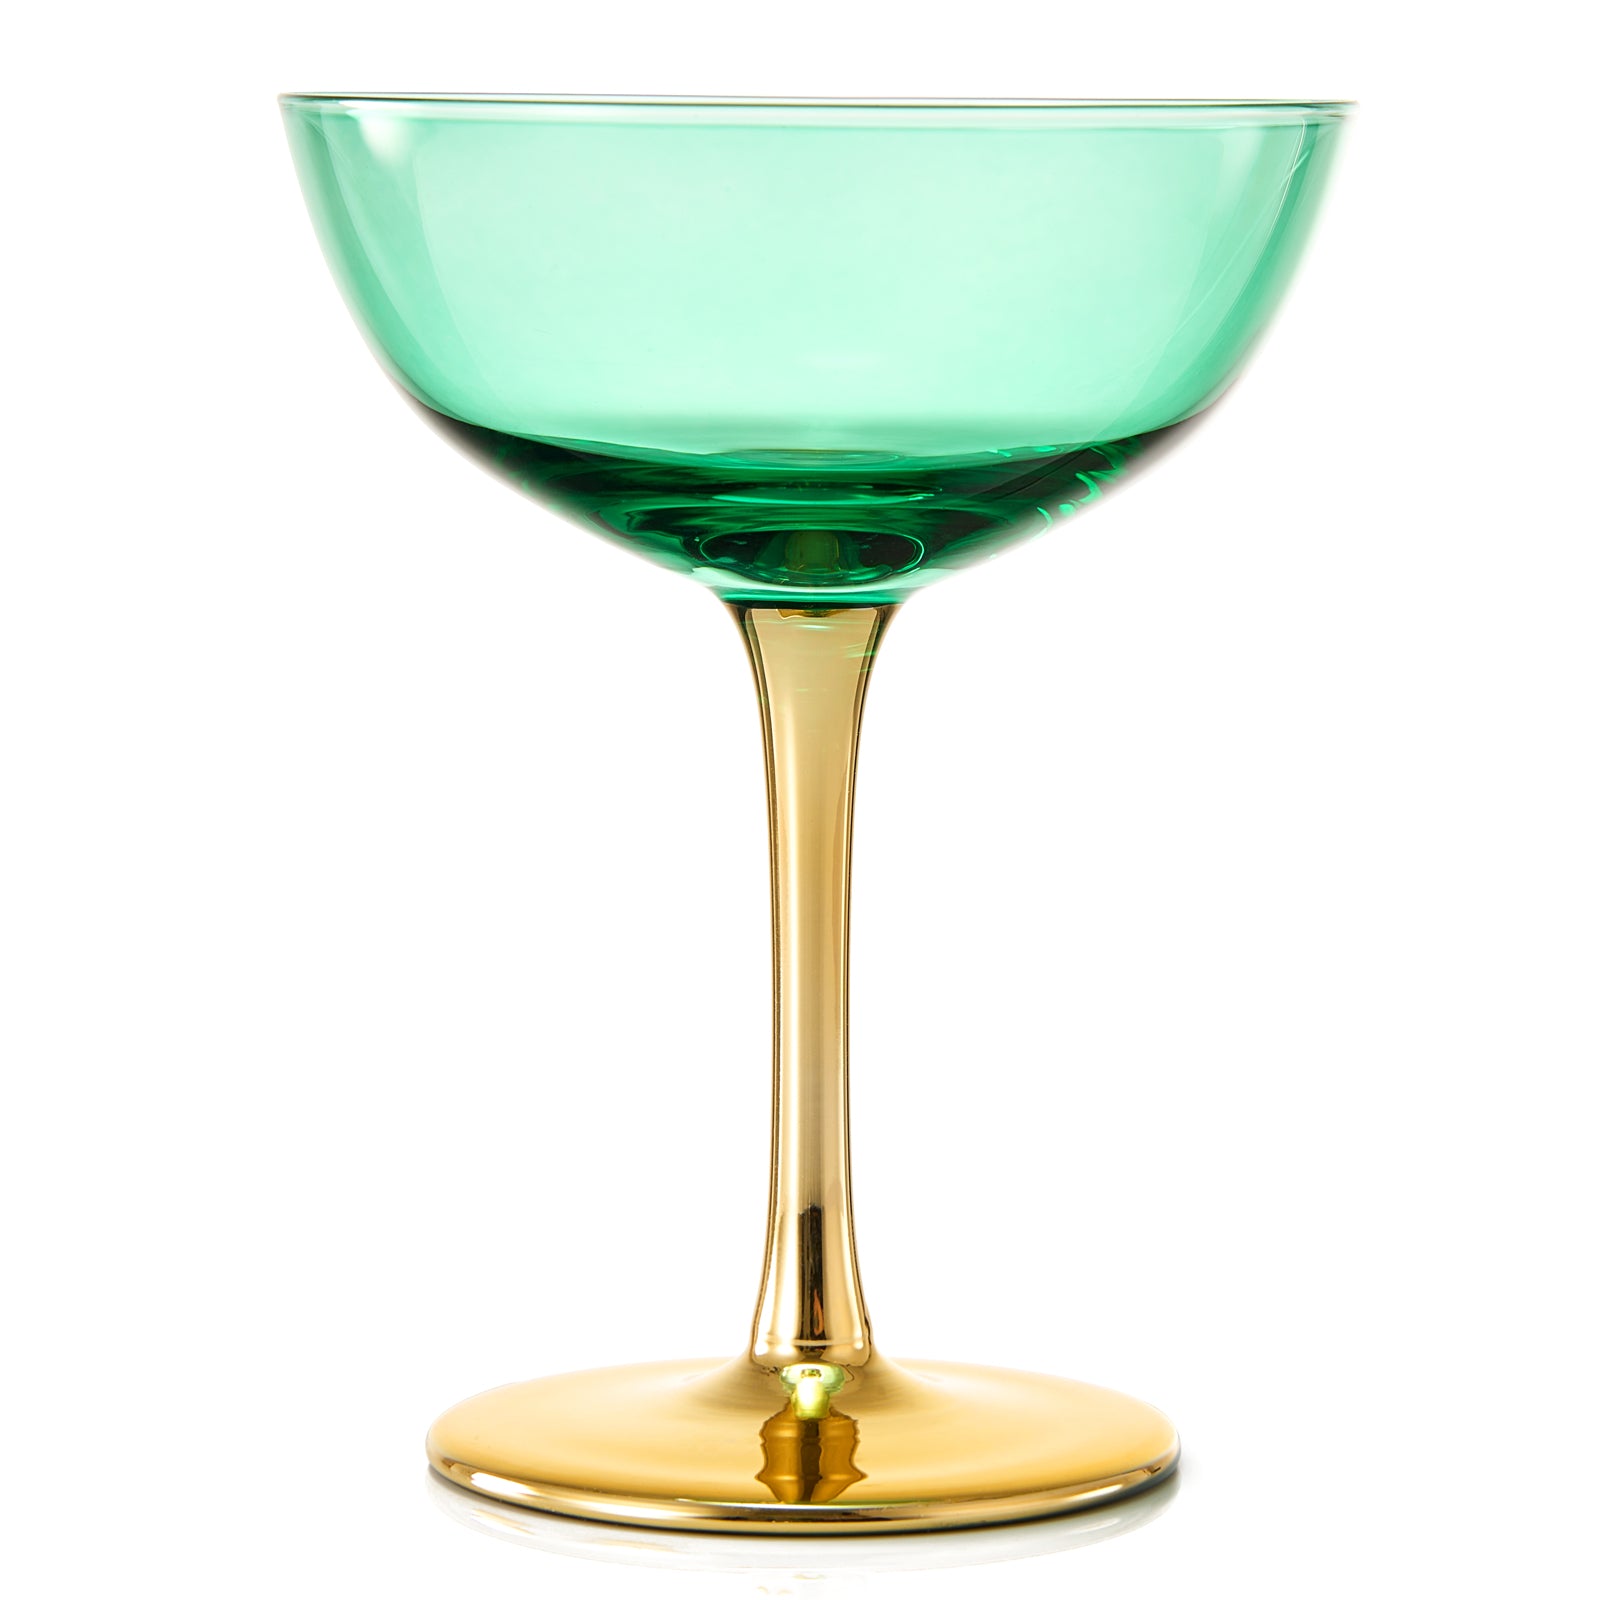 Colored Art Deco Cocktail Glasses, Gold Rimmed Vintage Martini Set